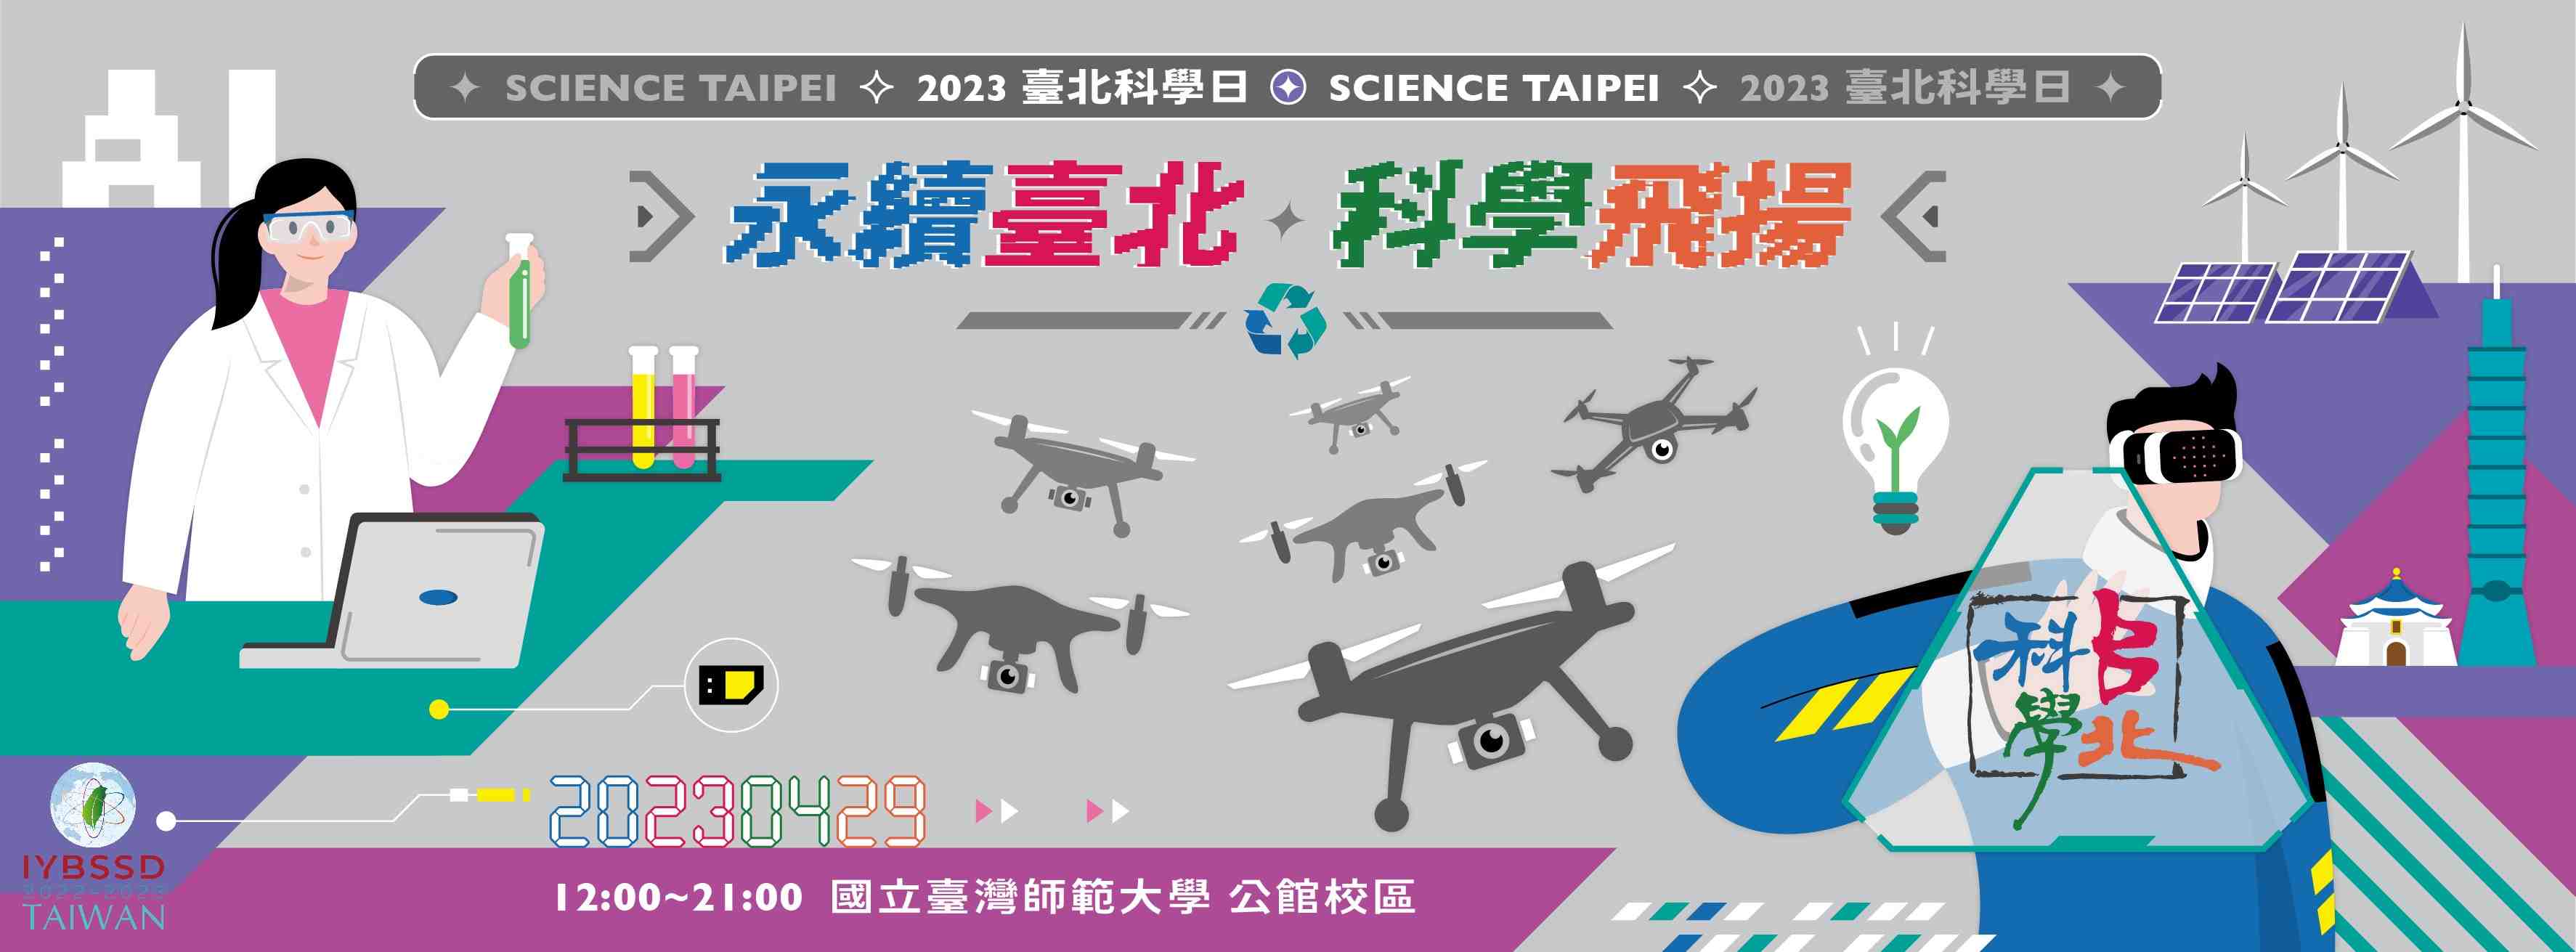 第九屆台北科學日宣傳用圖片/海報